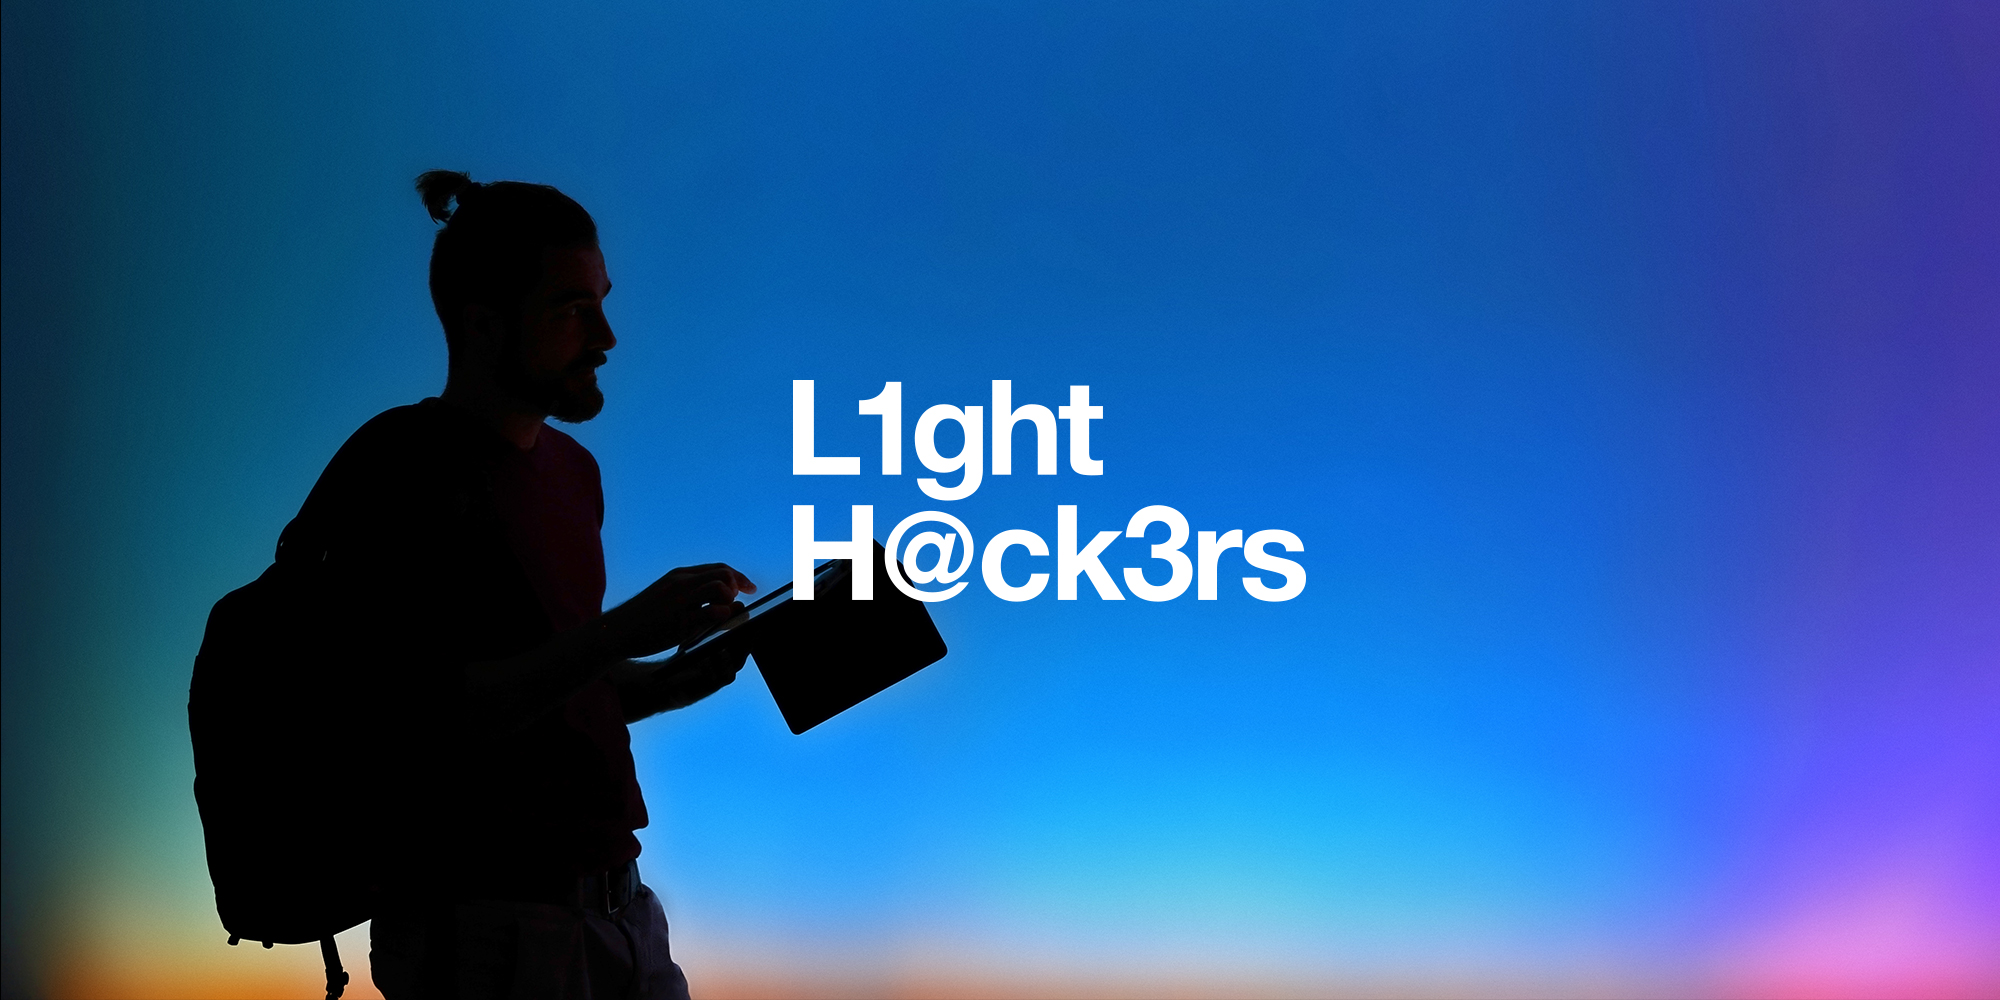 E’ partito LightHackers di iGuzzini Illuminazione